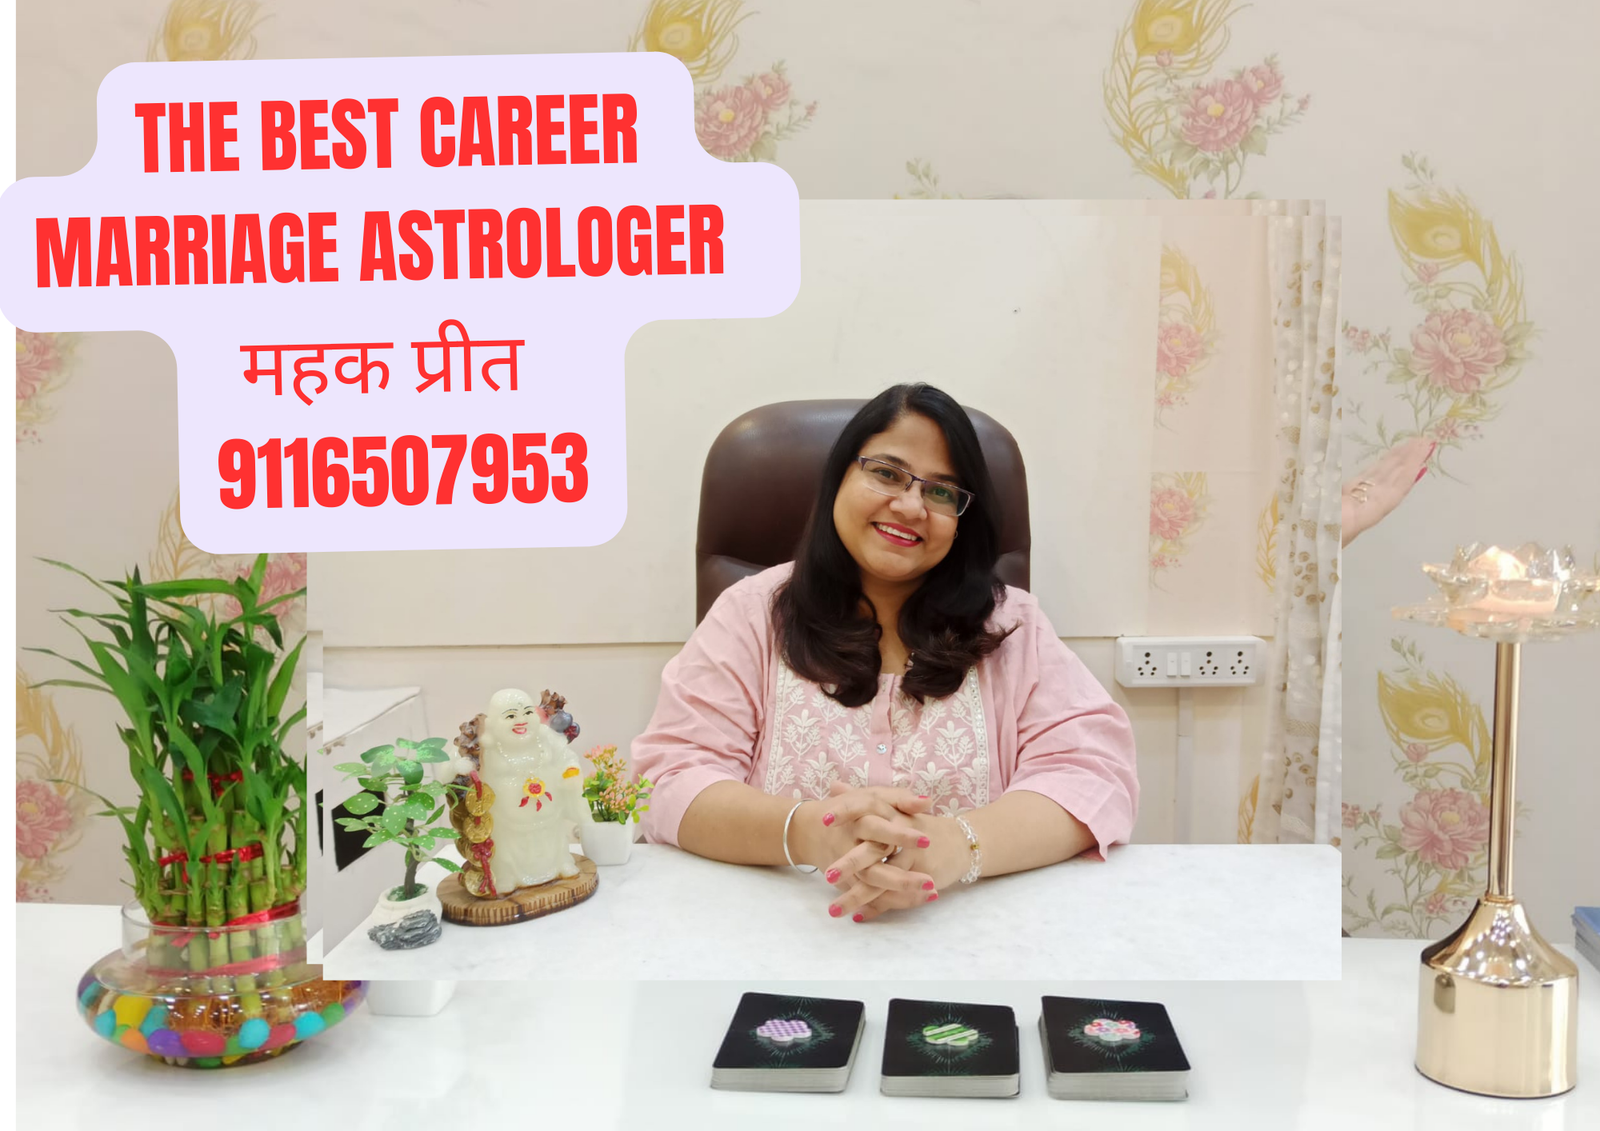 Career Marriage Astrologer in Jaipur